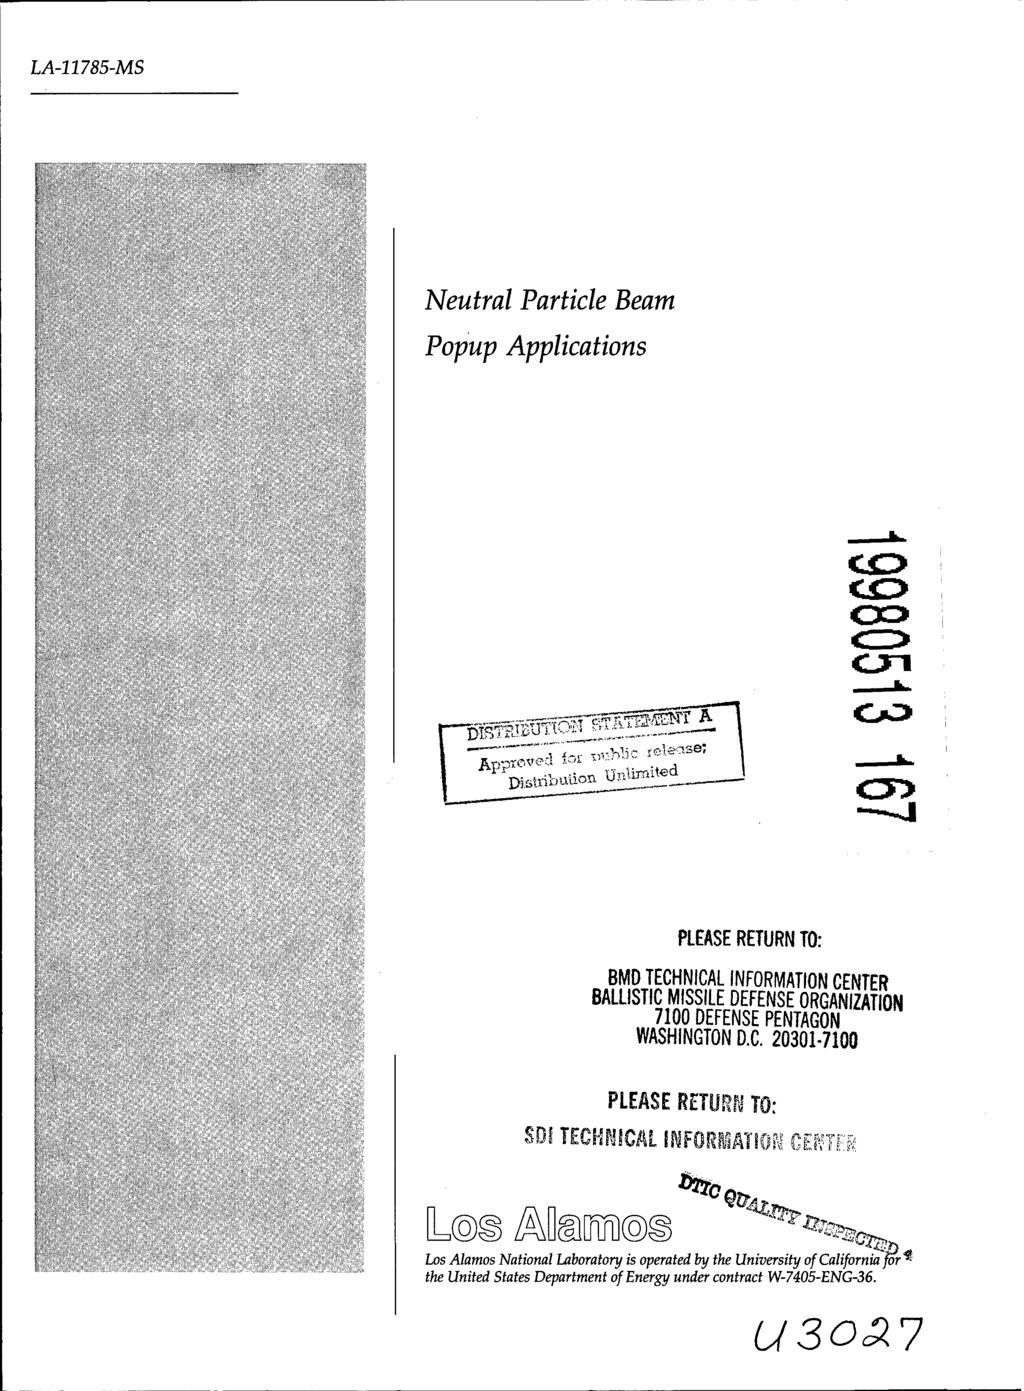 LA-11785-MS Neutral Particle Beam Popup Applications PI ApP Di.